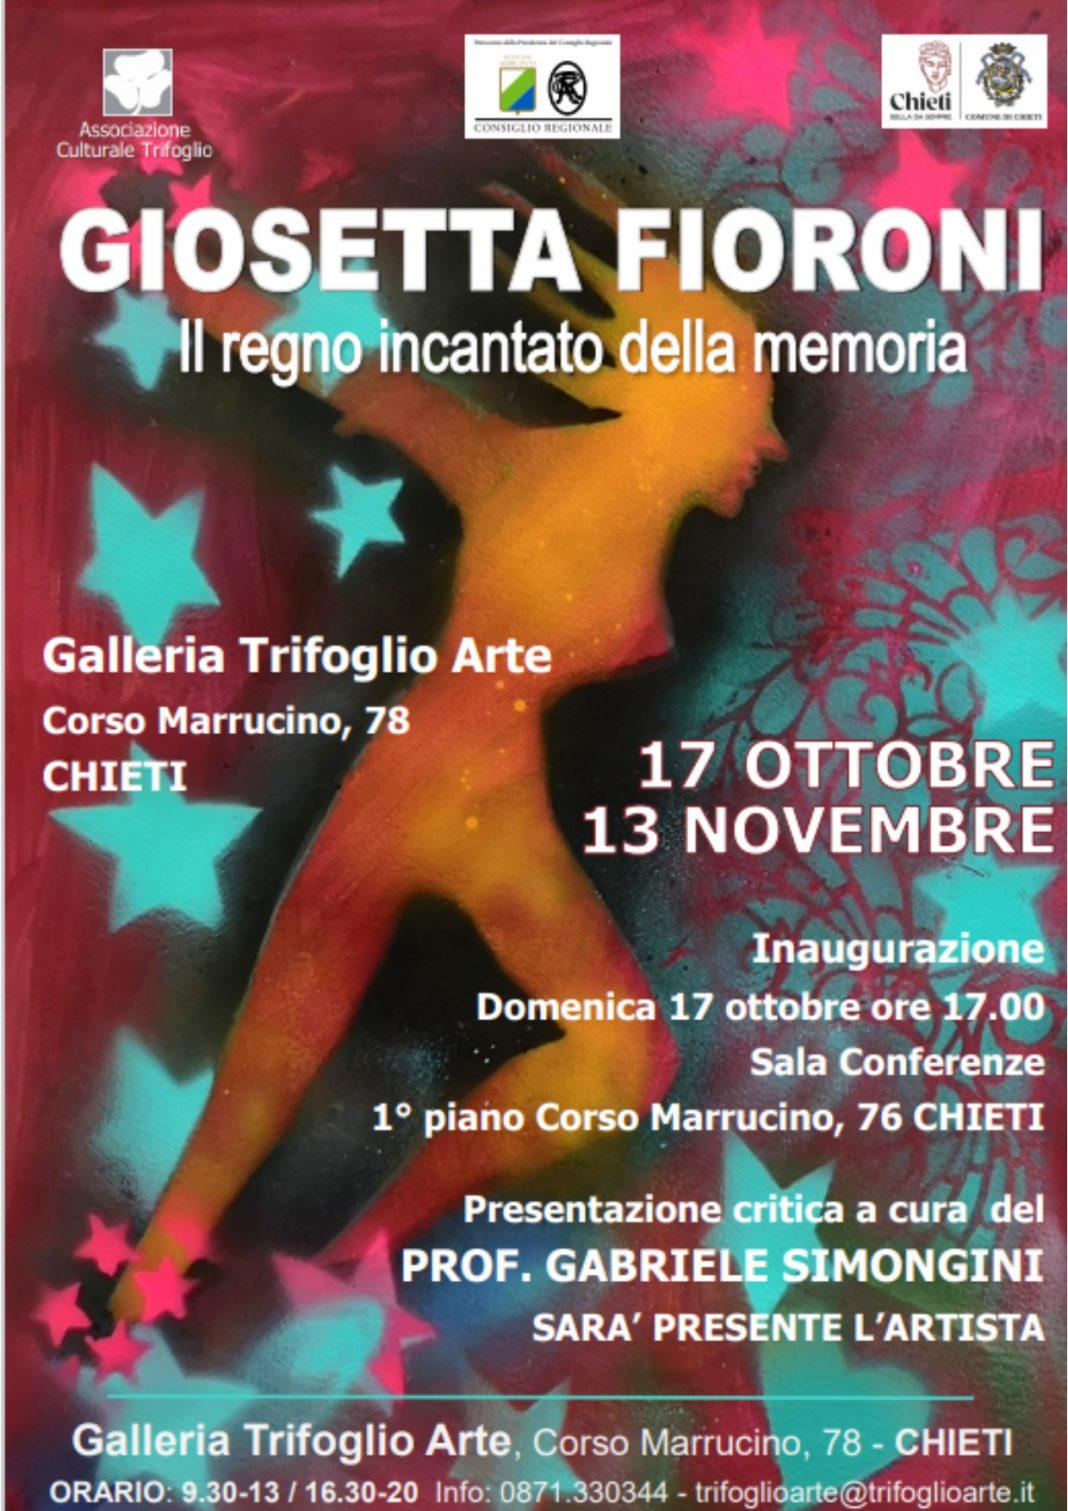 Giosetta Fioroni – Il regno incantato della memoriahttps://www.exibart.com/repository/media/formidable/11/img/ce2/Giosetta-Fioroni_100x140-1068x1511.jpg